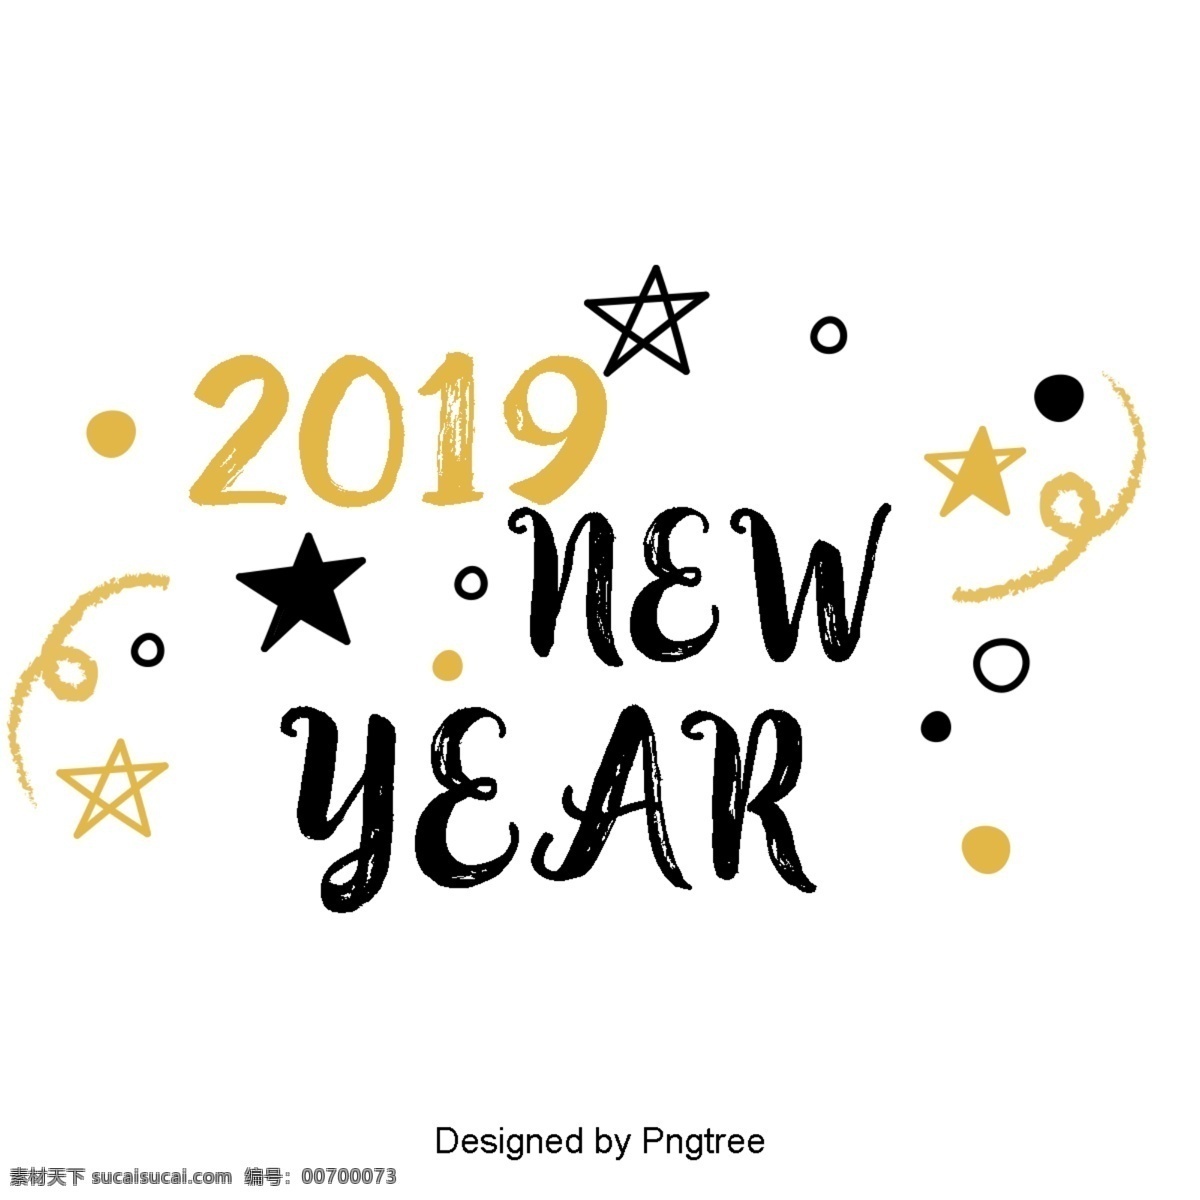 新 年 英国 字体 装饰 金色 黑色 新年 2019 二千一十九 圣诞 彩带 树 礼品 英语 装饰字体 庆祝春节